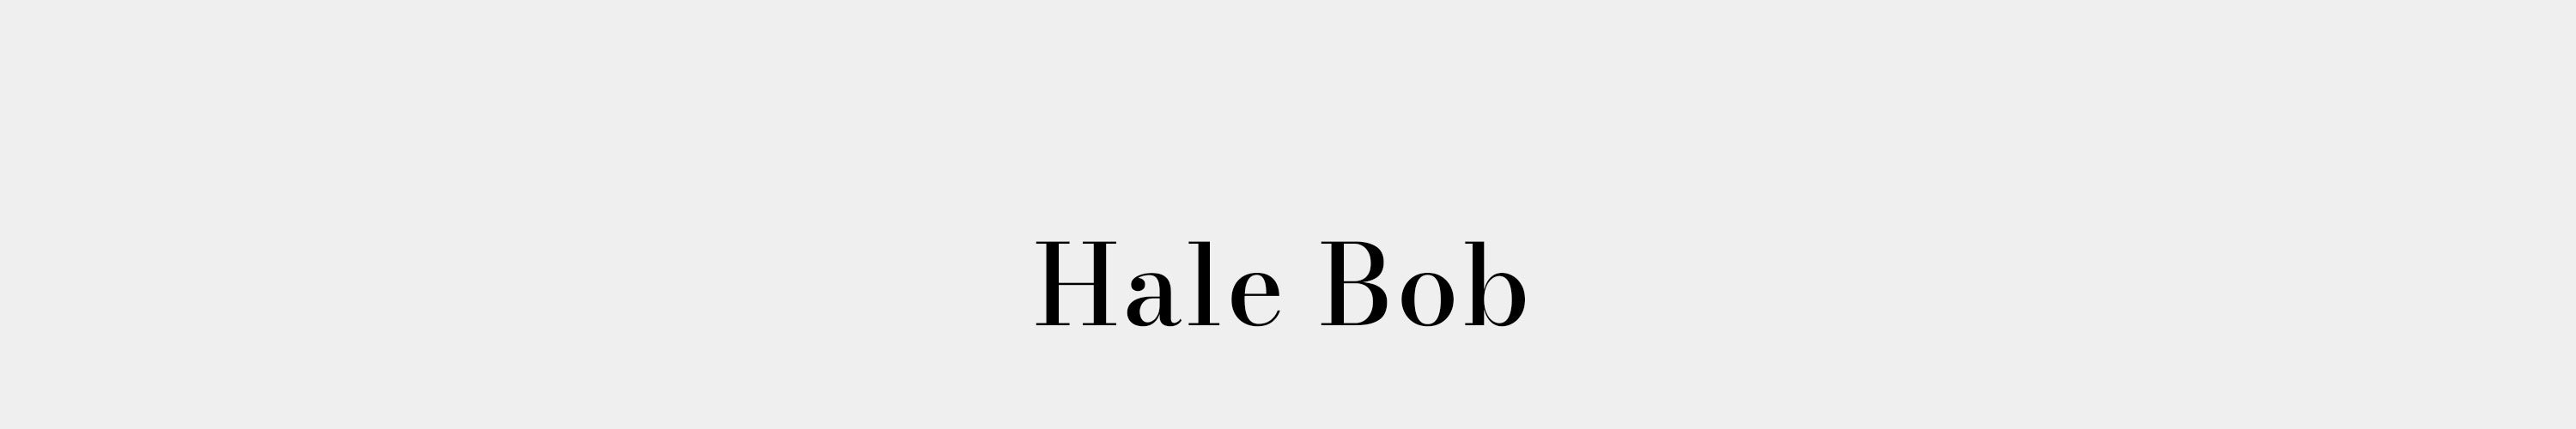 HALE BOB